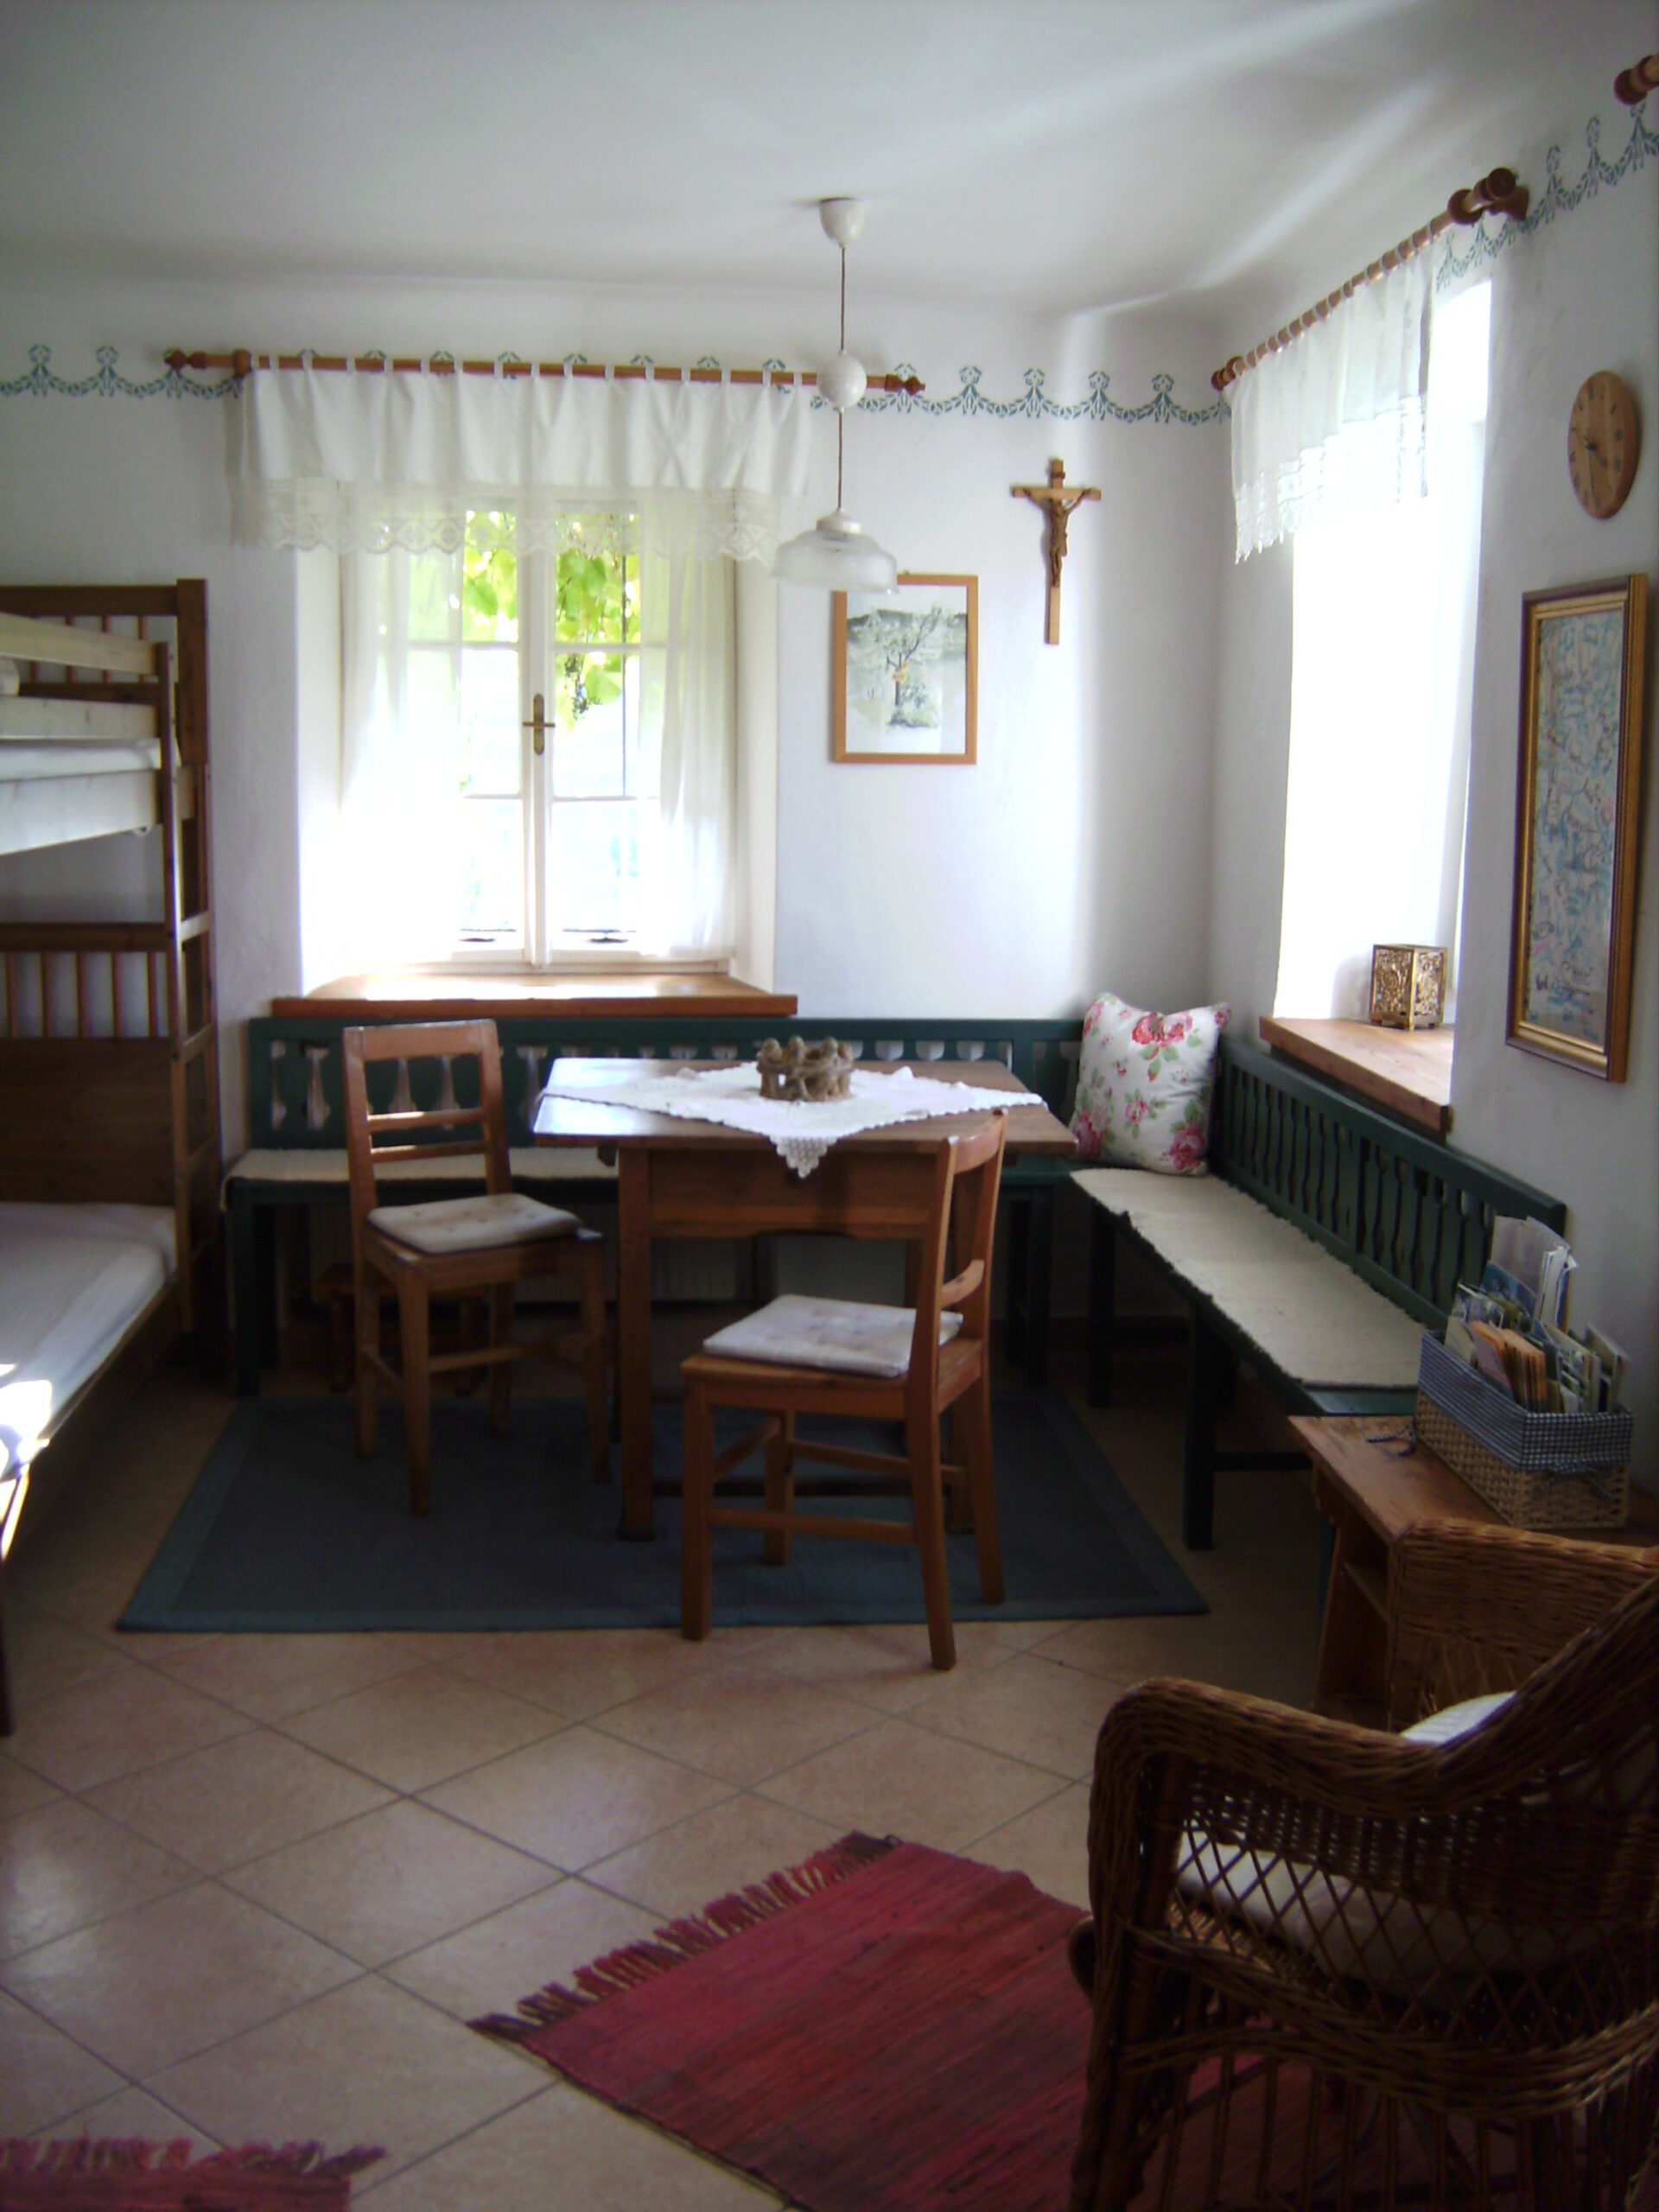 Wohnraum im Schachnerhaus am Pöllauberg